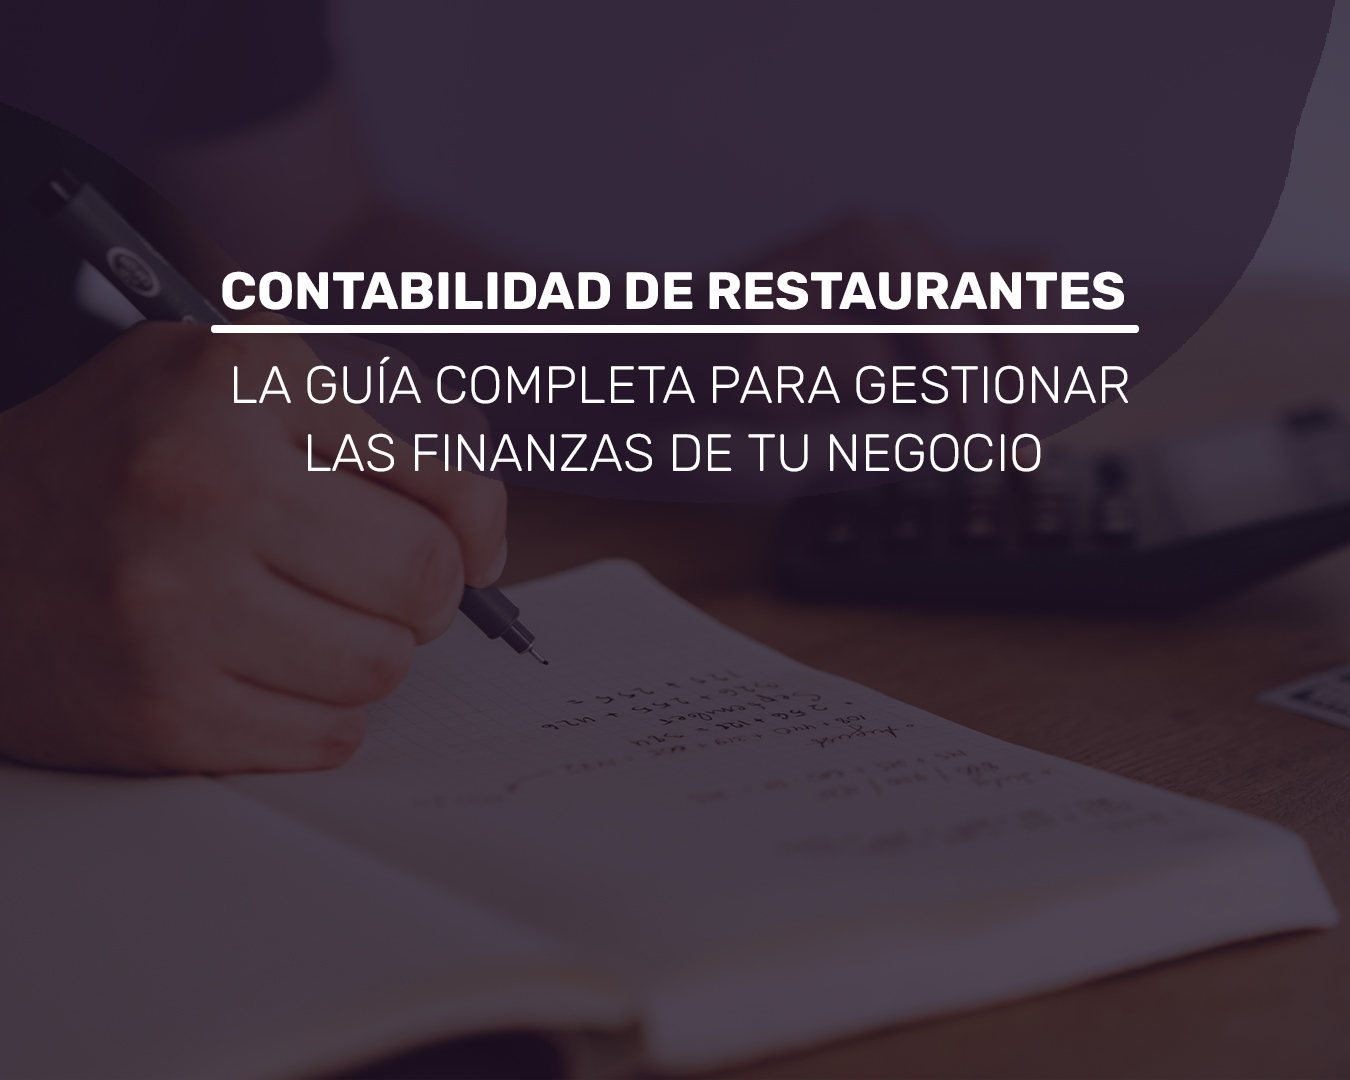 Contabilidad de restaurantes: La guía completa para gestionar las finanzas de tu negocio